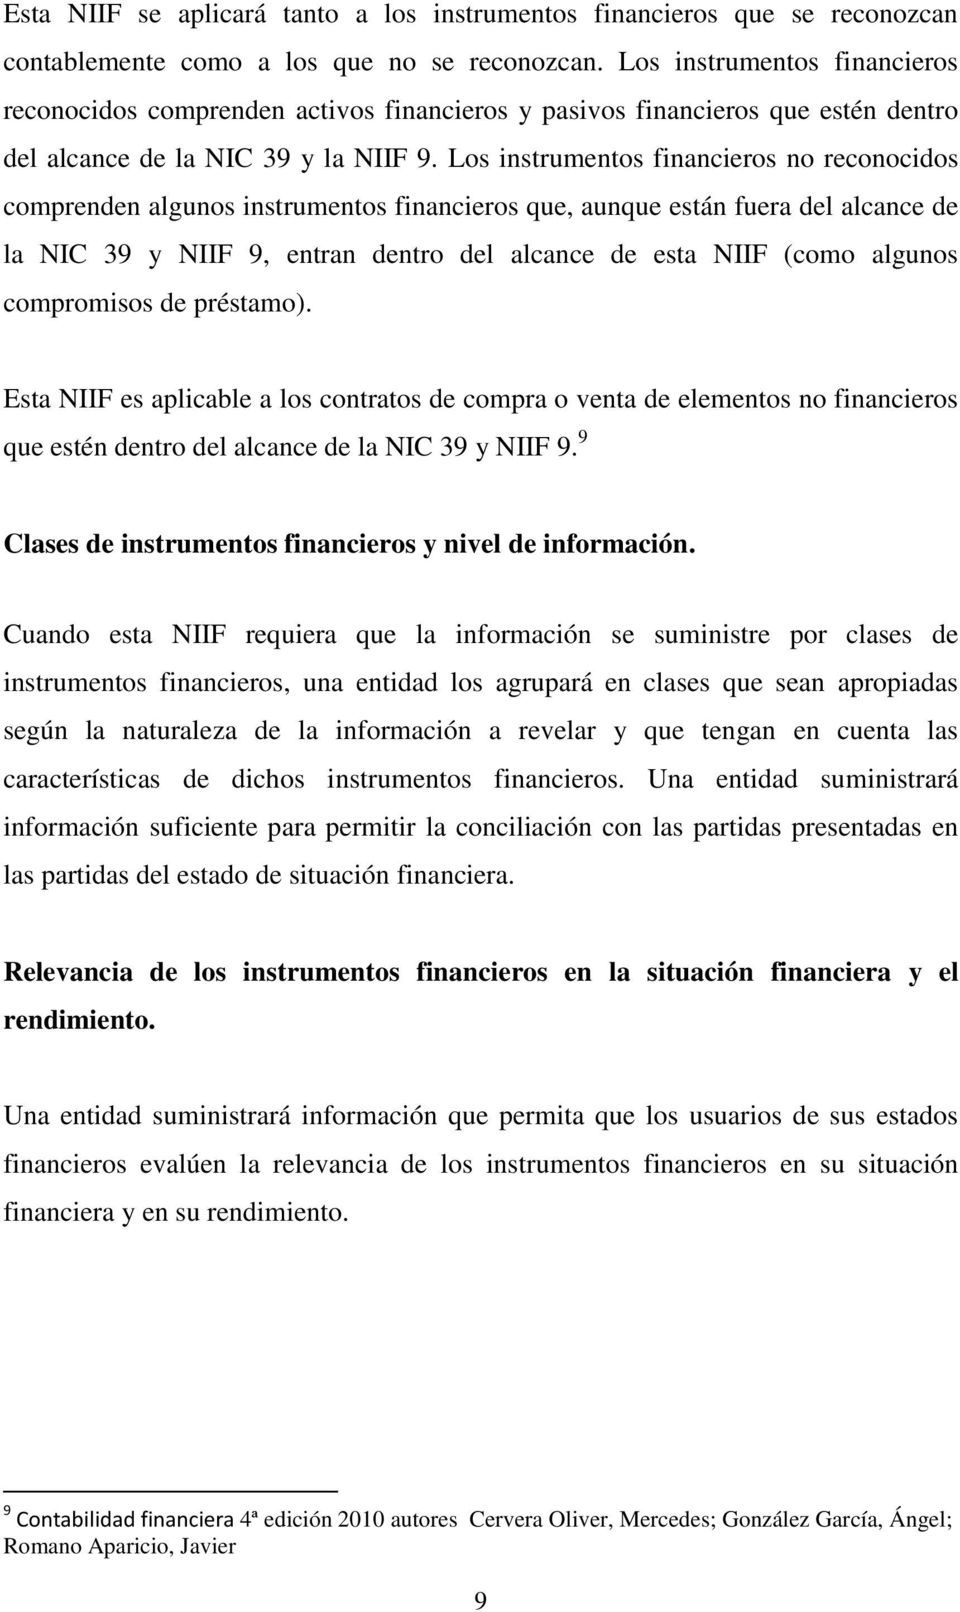 Los instrumentos financieros no reconocidos comprenden algunos instrumentos financieros que, aunque están fuera del alcance de la NIC 39 y NIIF 9, entran dentro del alcance de esta NIIF (como algunos